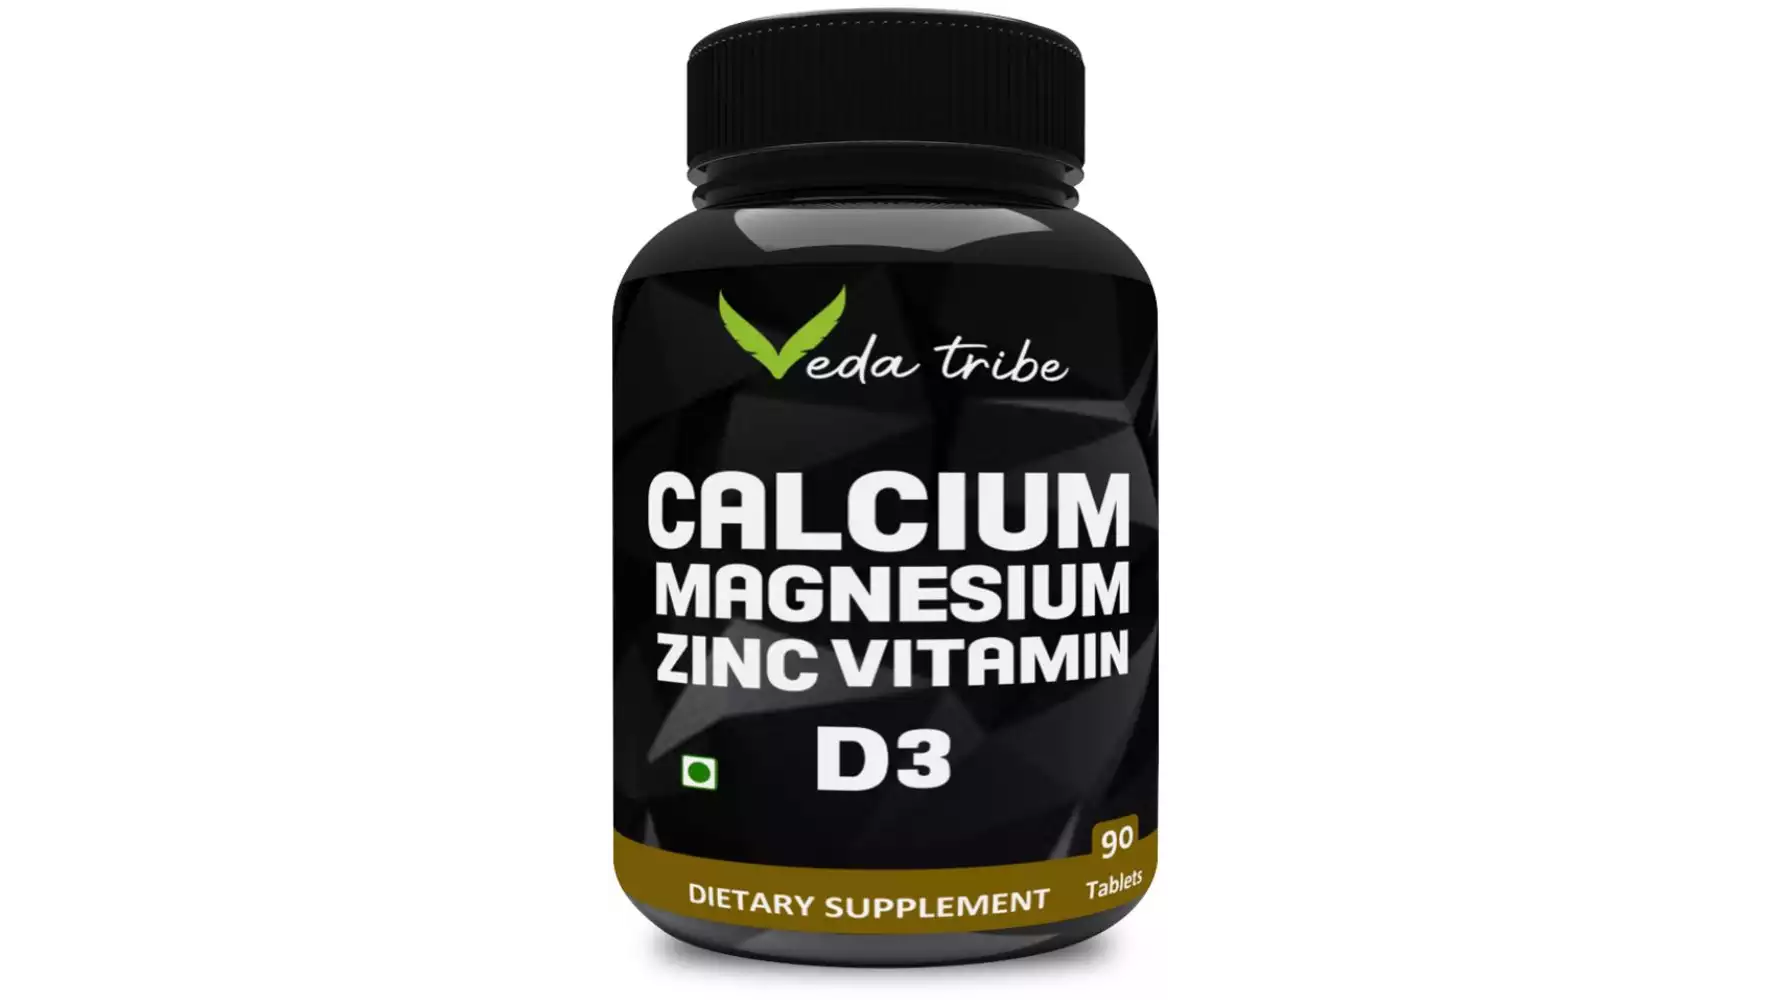 Veda Tribe Calcium Magnesium Zinc Vitamin D3 Supplement (90tab)